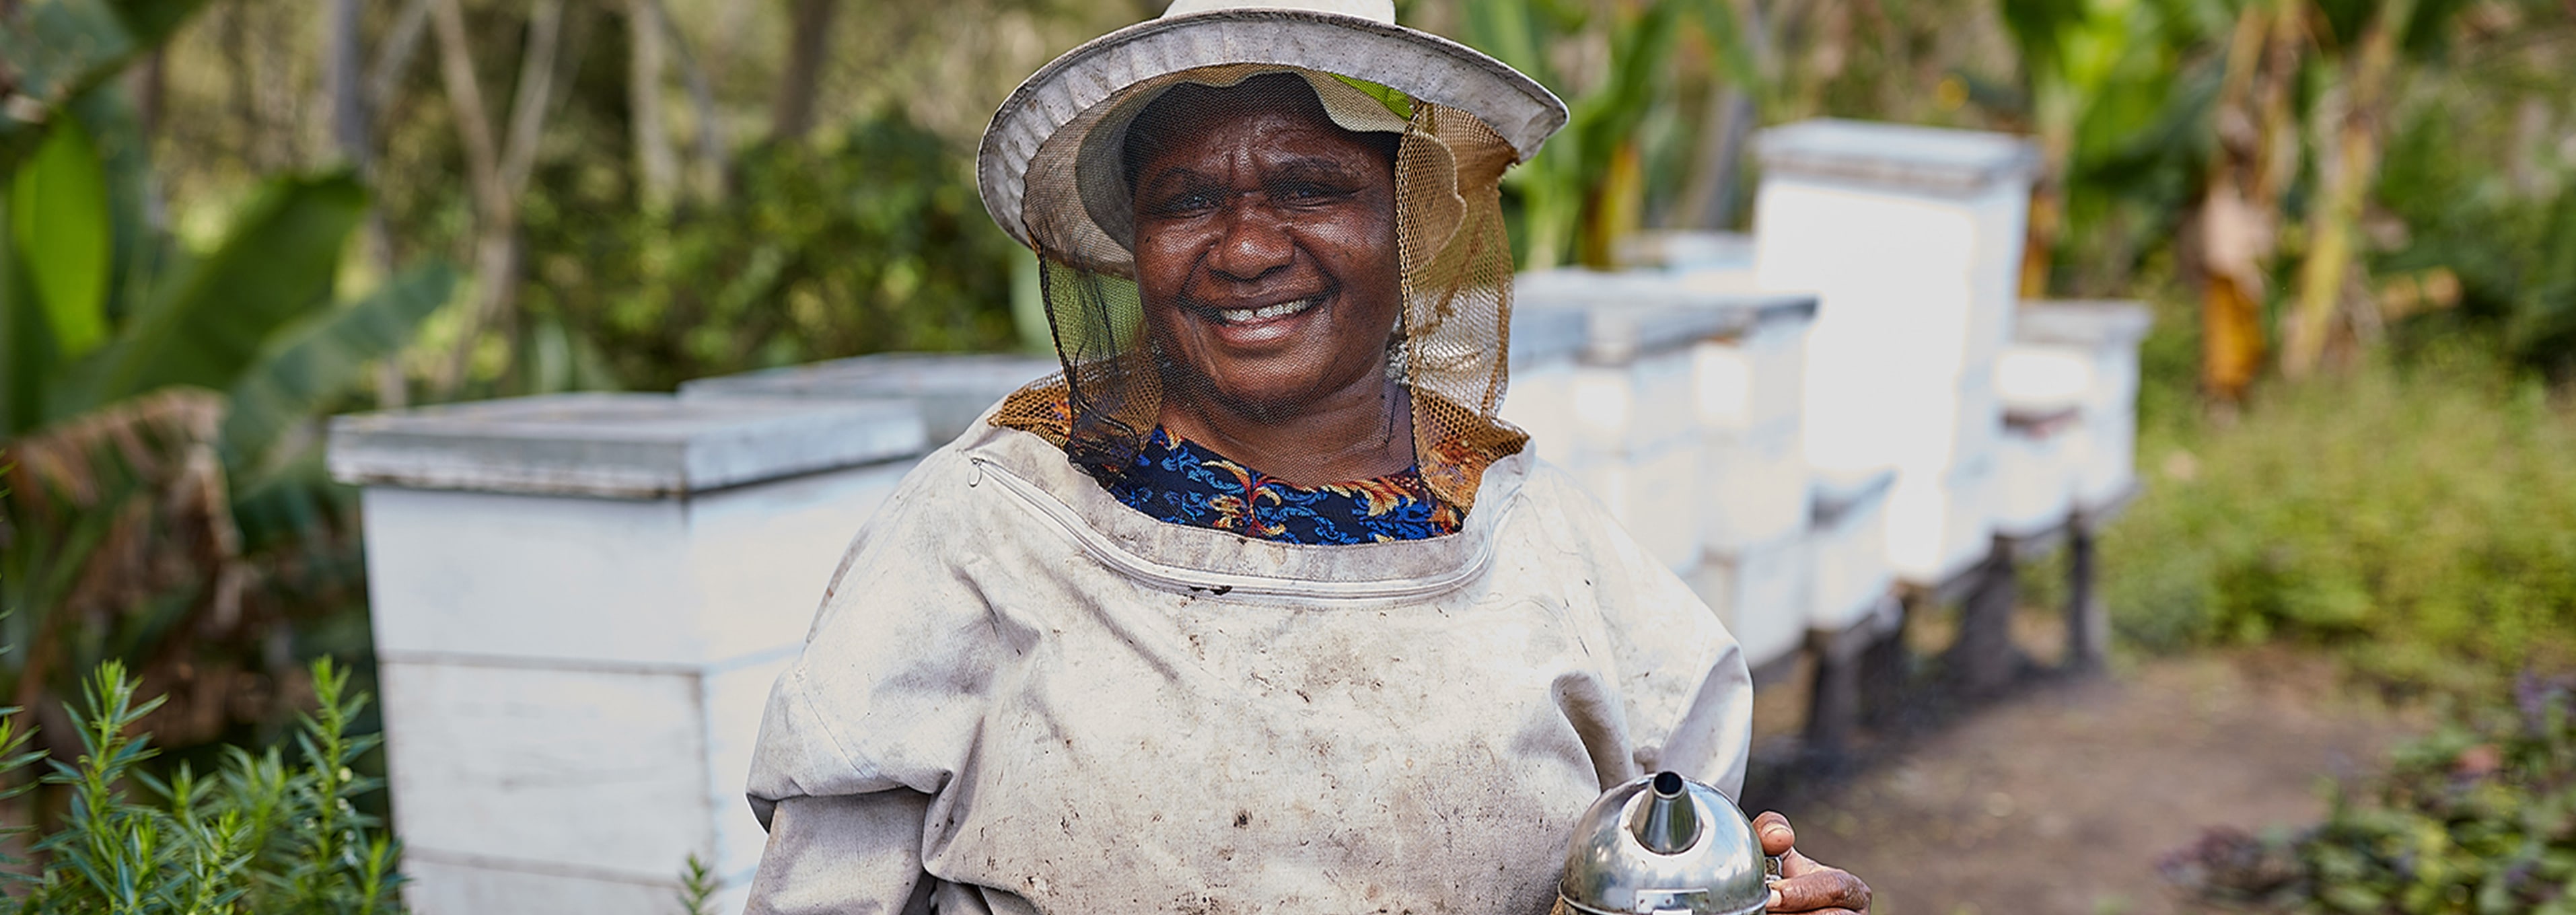 LVRSustainable für Oxfam: Eine bessere Gesellschaft durch stärkere Frauen | Onanos Geschichte